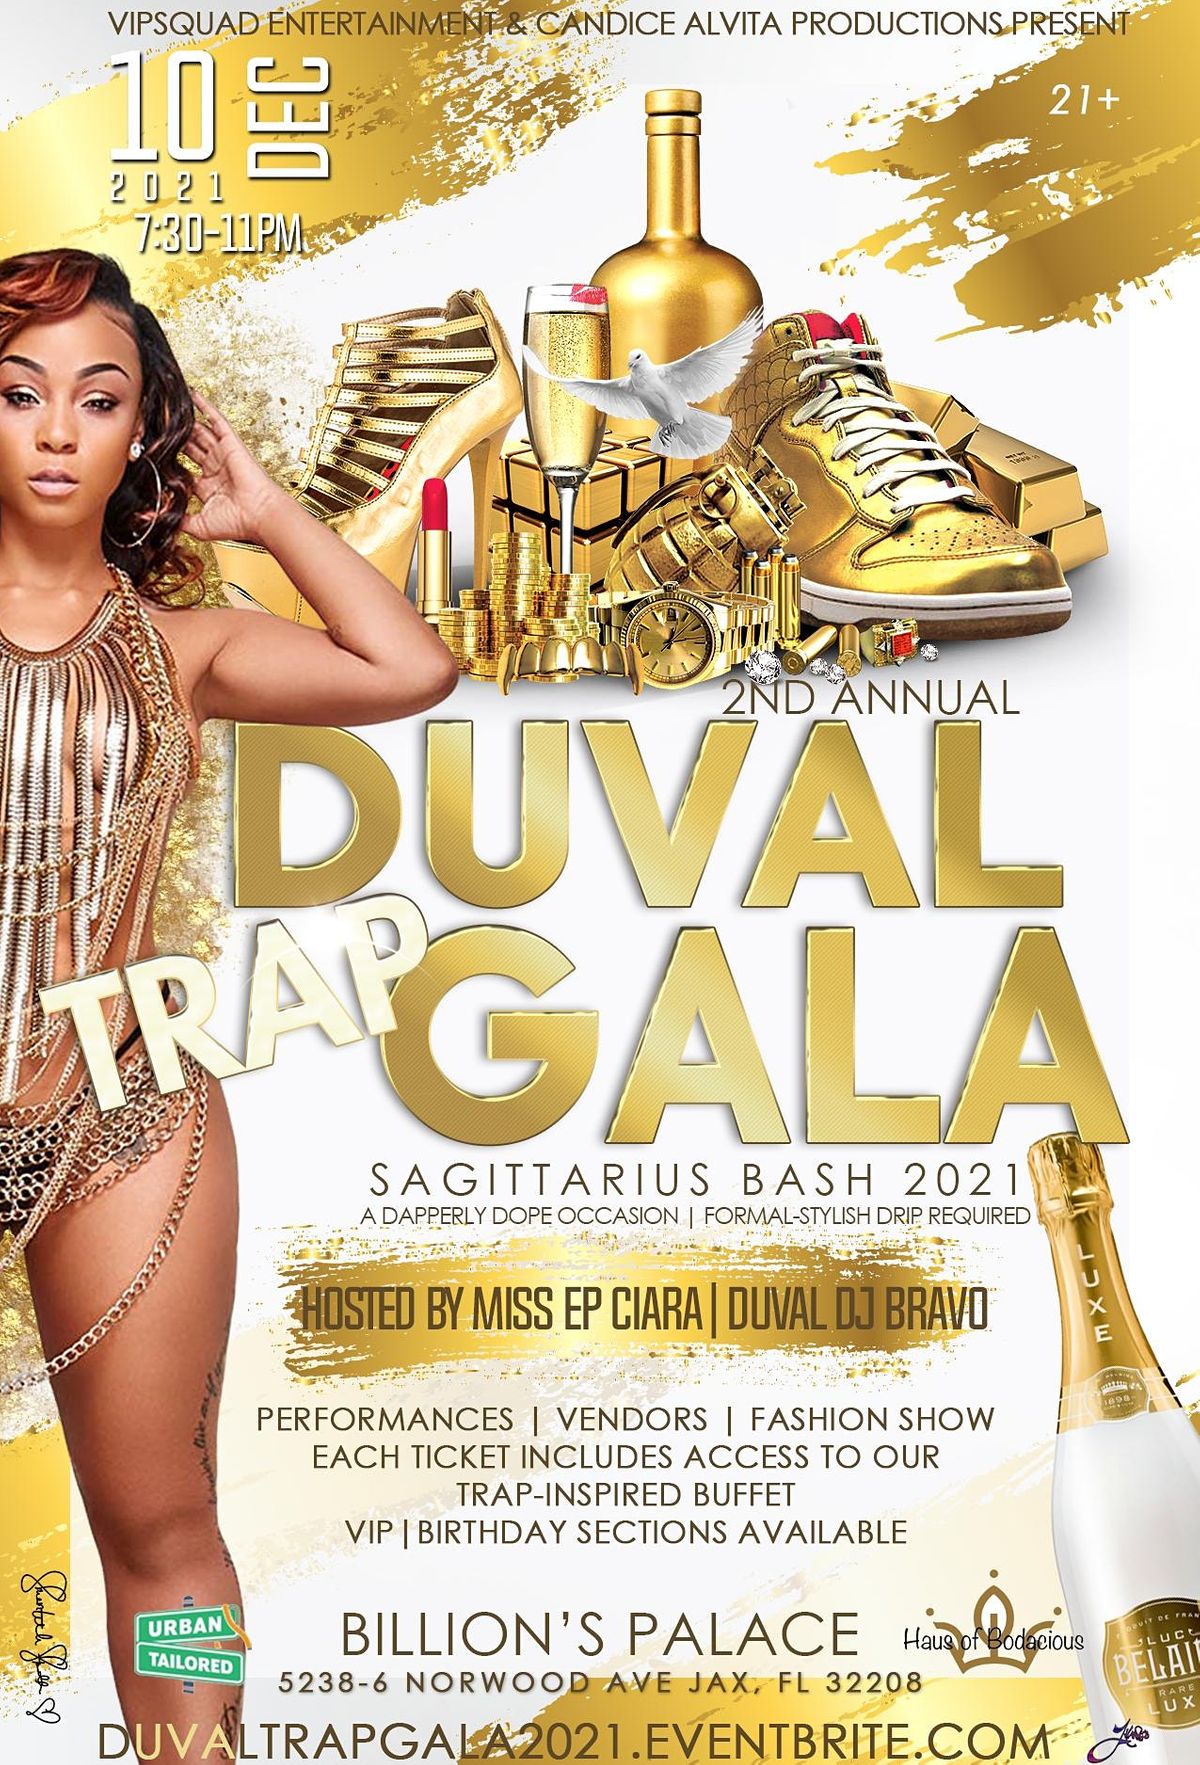 2nd Annual Duval Trap Gala: Sagittarius Bash 2021